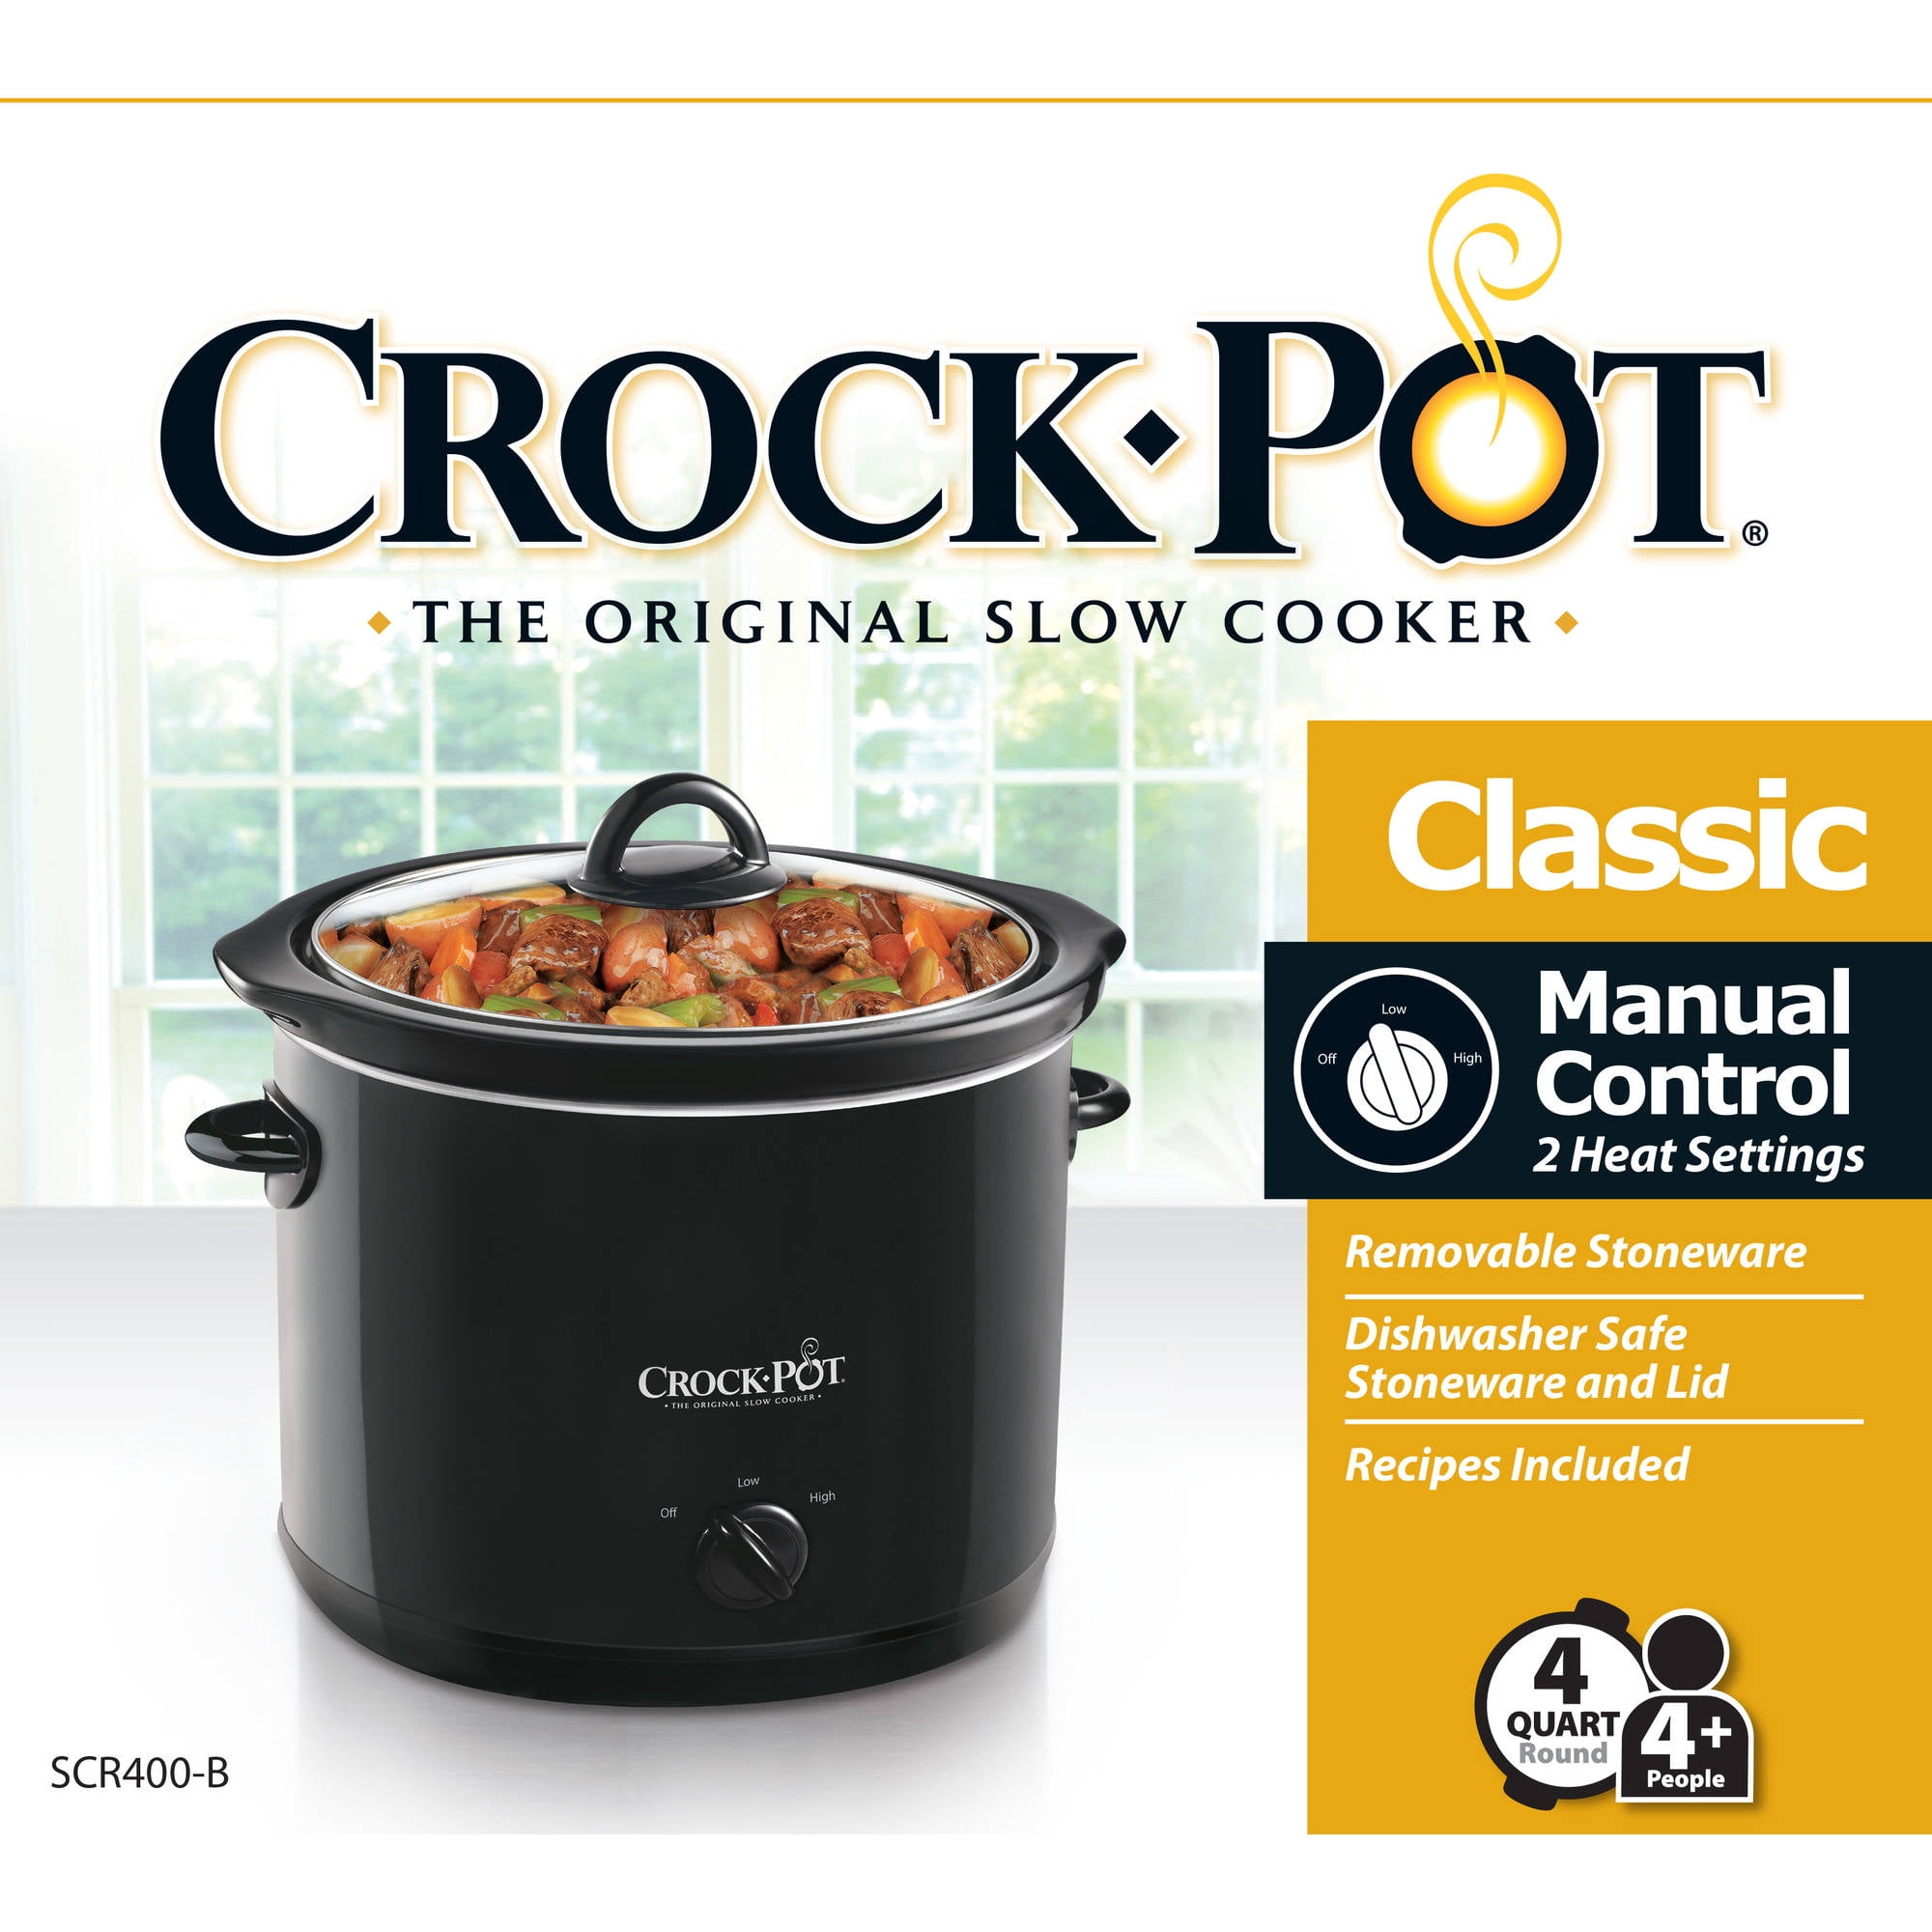 crock pot scr400 b 4 quart manual slow cooker black